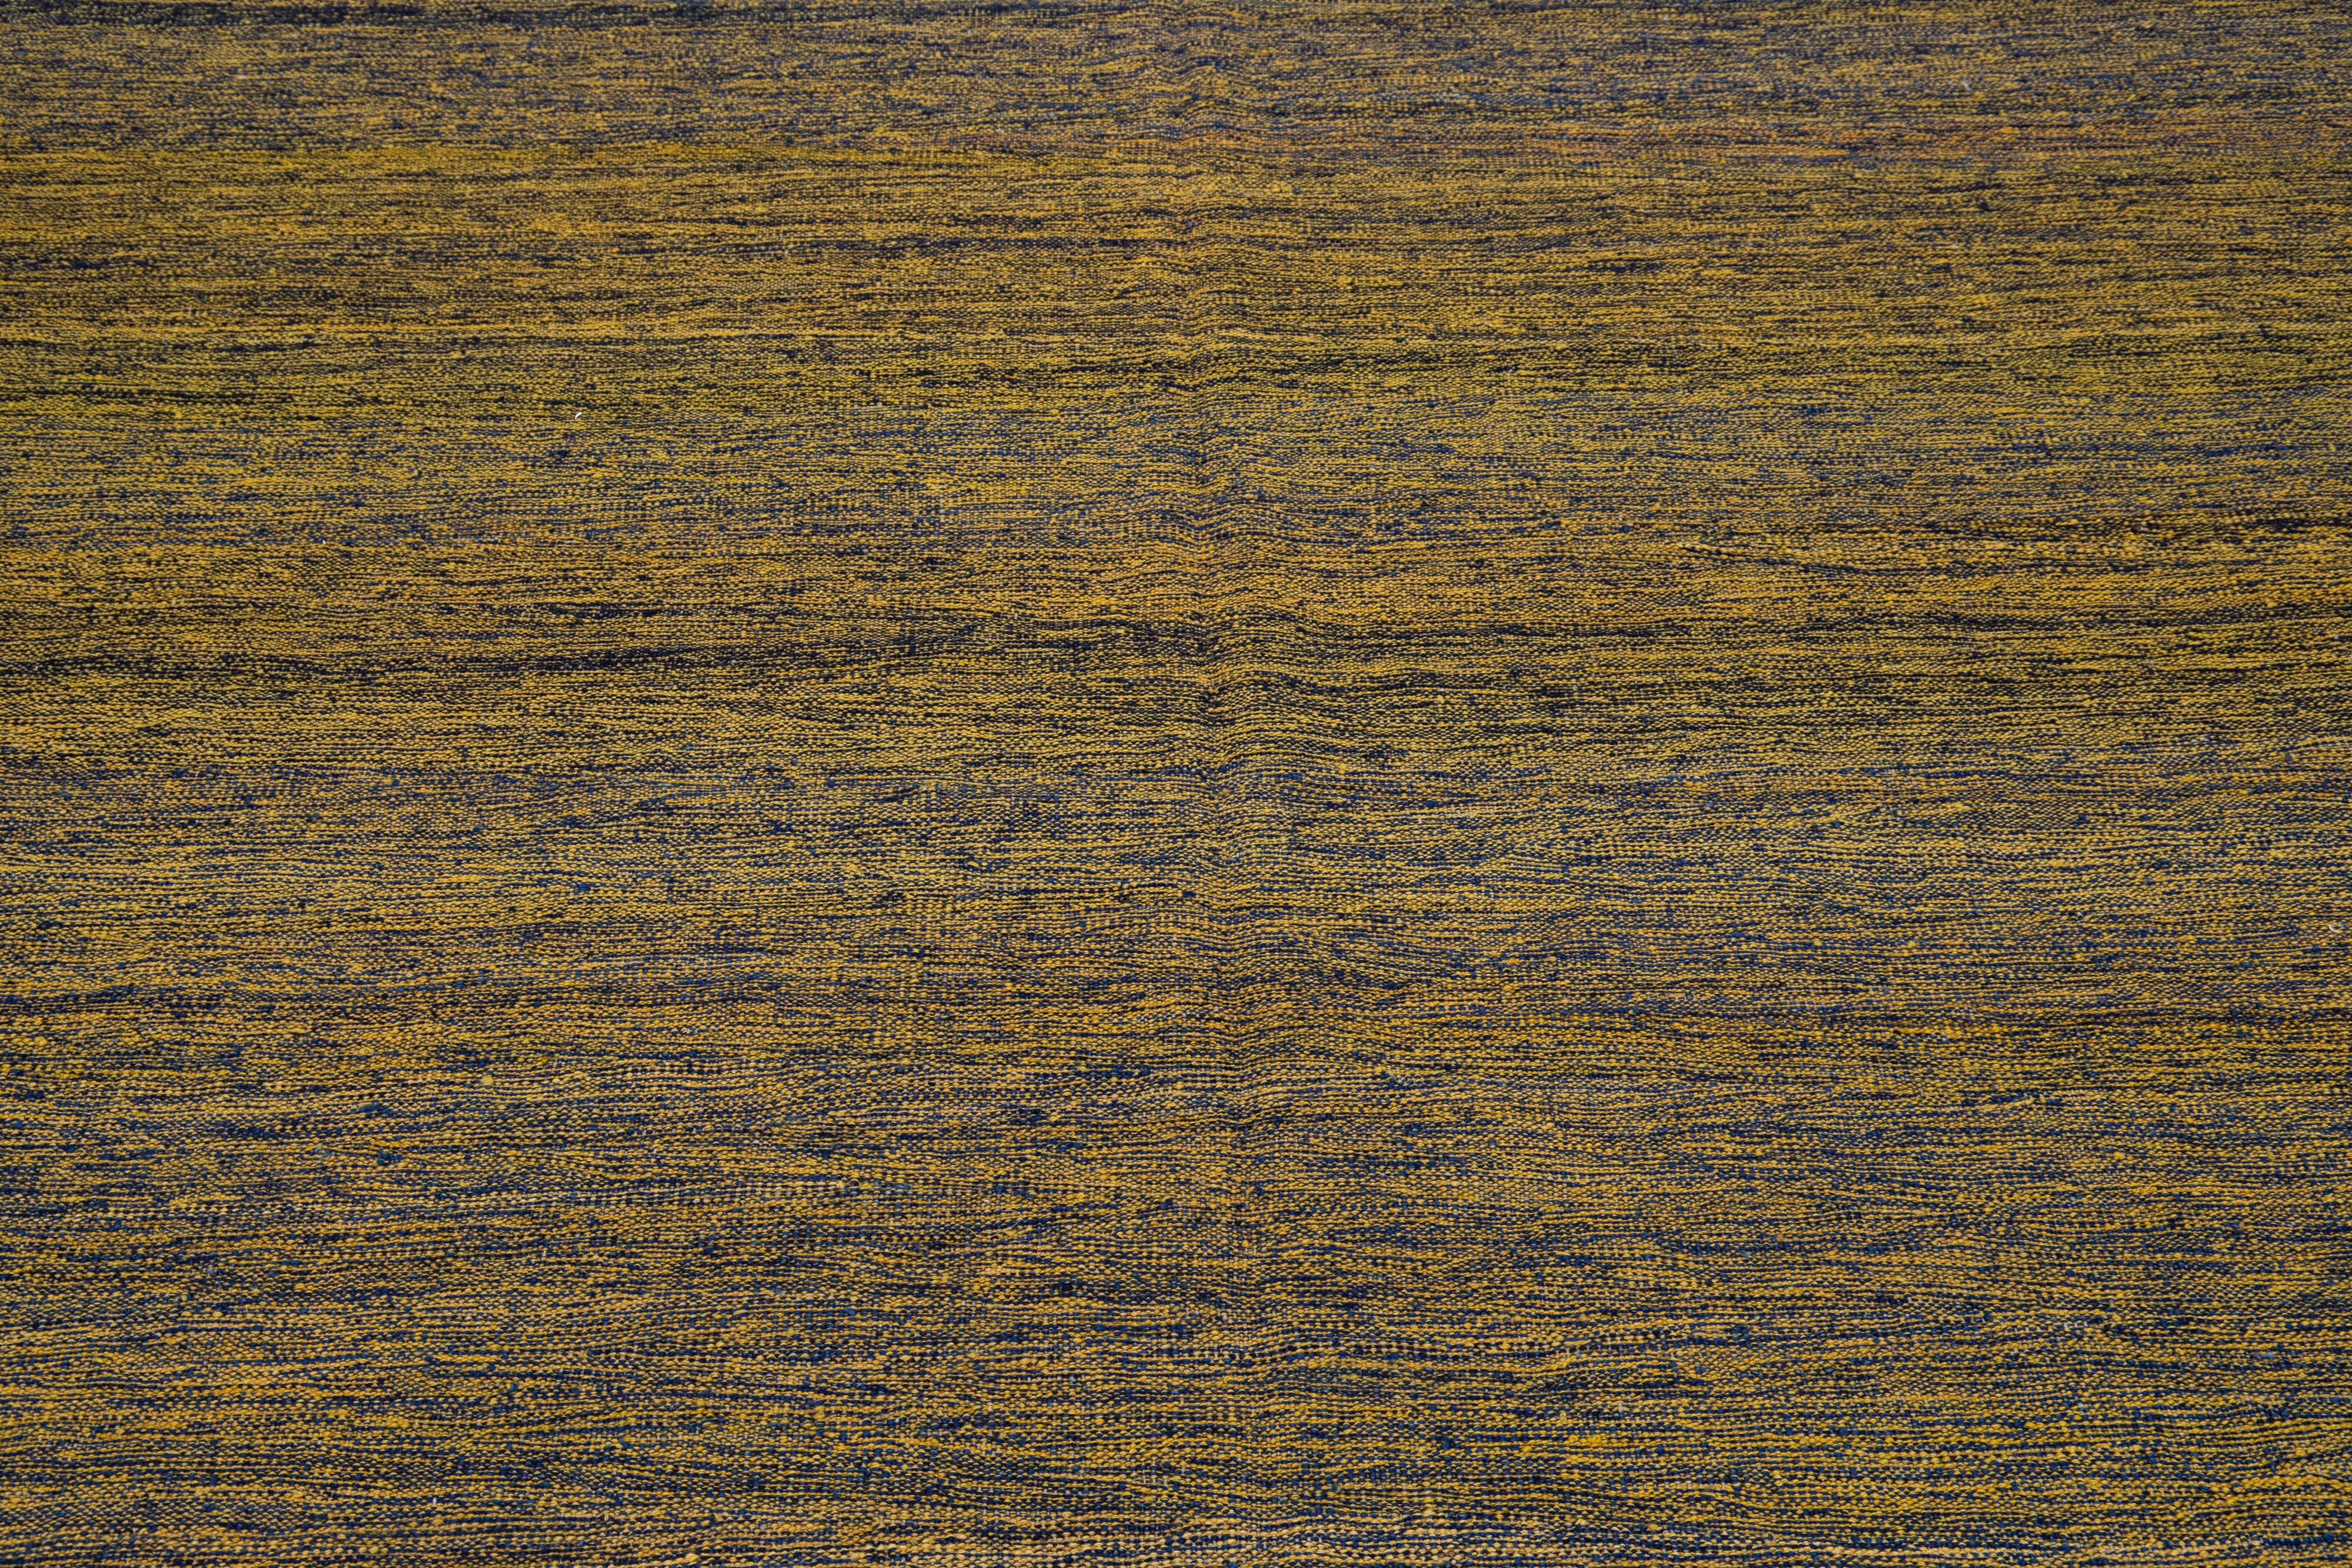 Ein moderner türkischer Kilim-Teppich, der in sorgfältiger Handarbeit gefertigt wurde, zeigt eine exquisite Anordnung von verschlungenen goldbraunen Streifen, die sich über die gesamte Oberfläche des Teppichs erstrecken.

Dieser Teppich misst 7'4